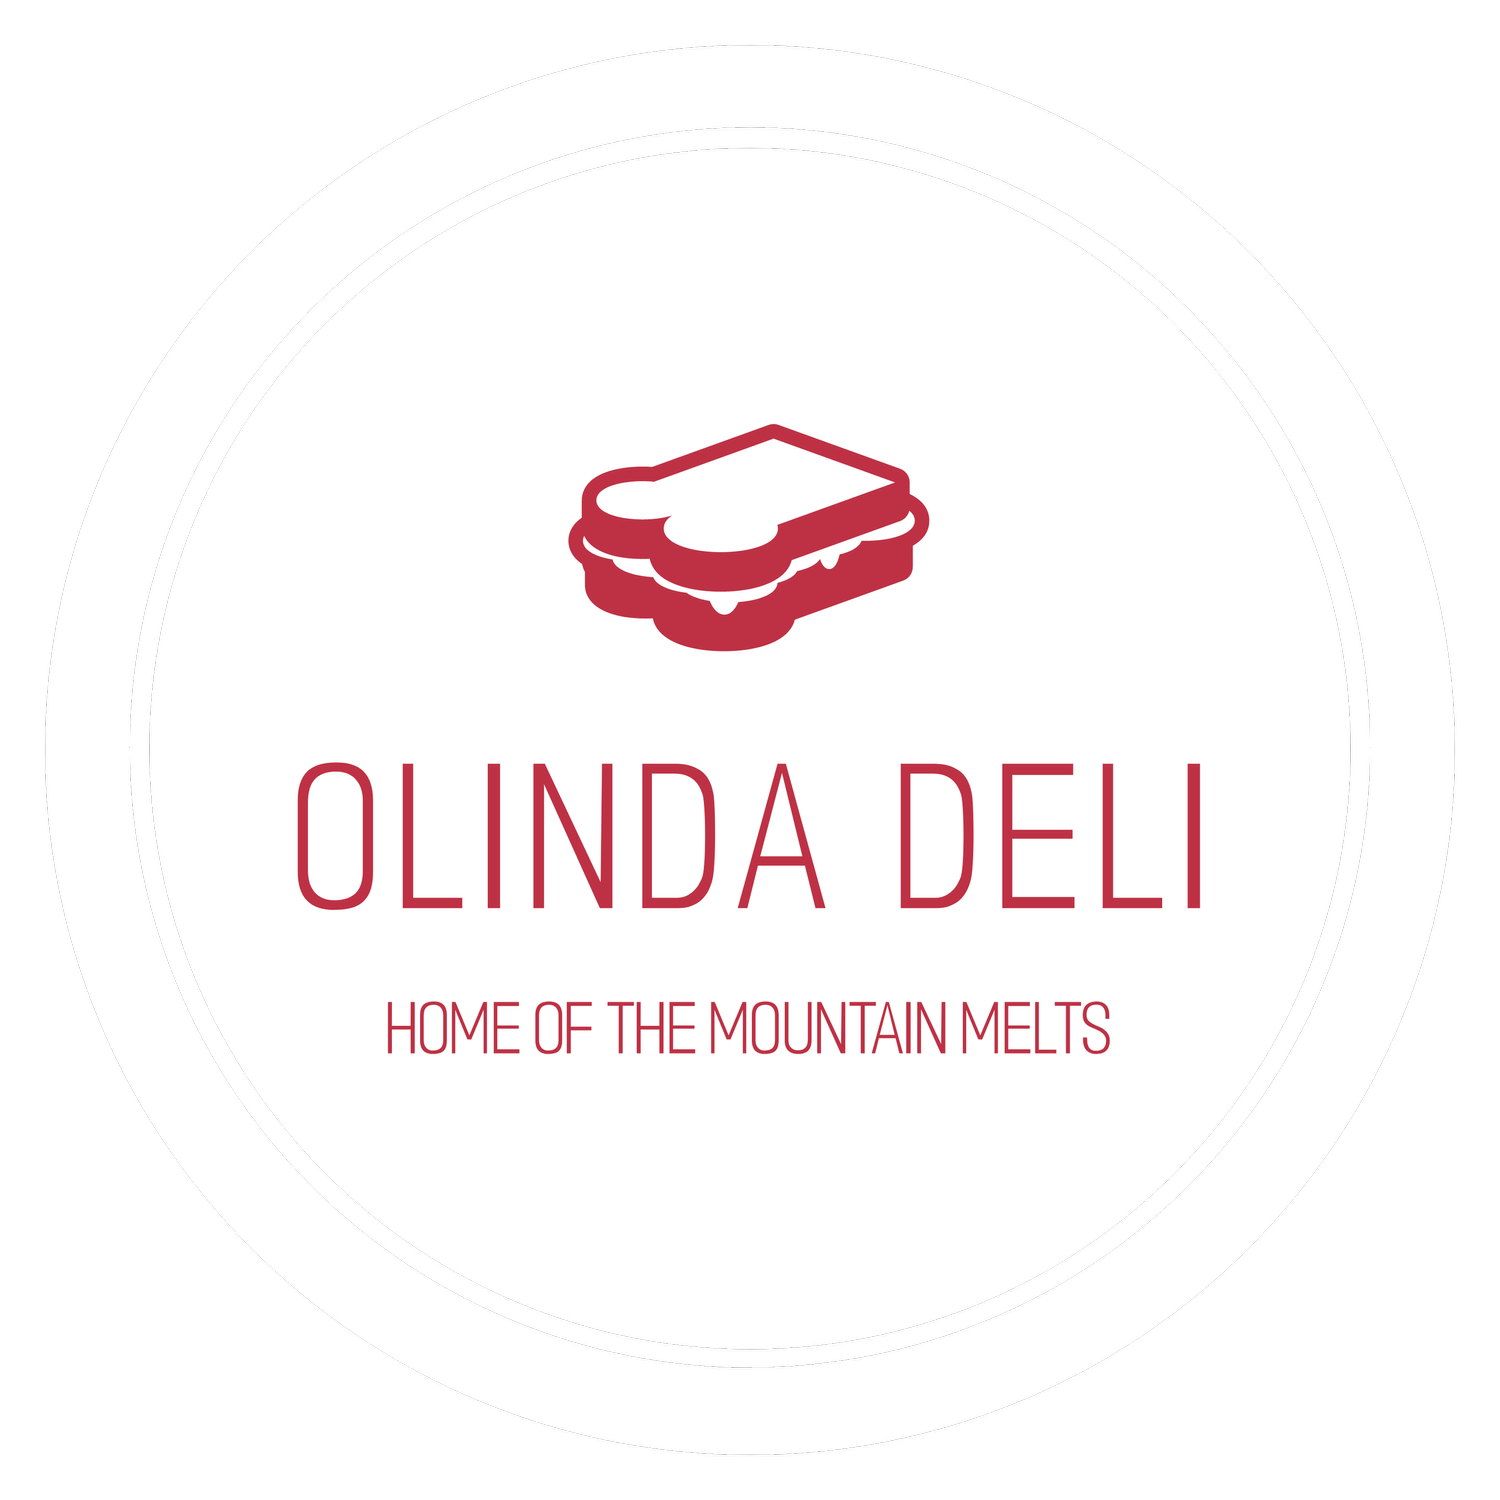 The Olinda Deli